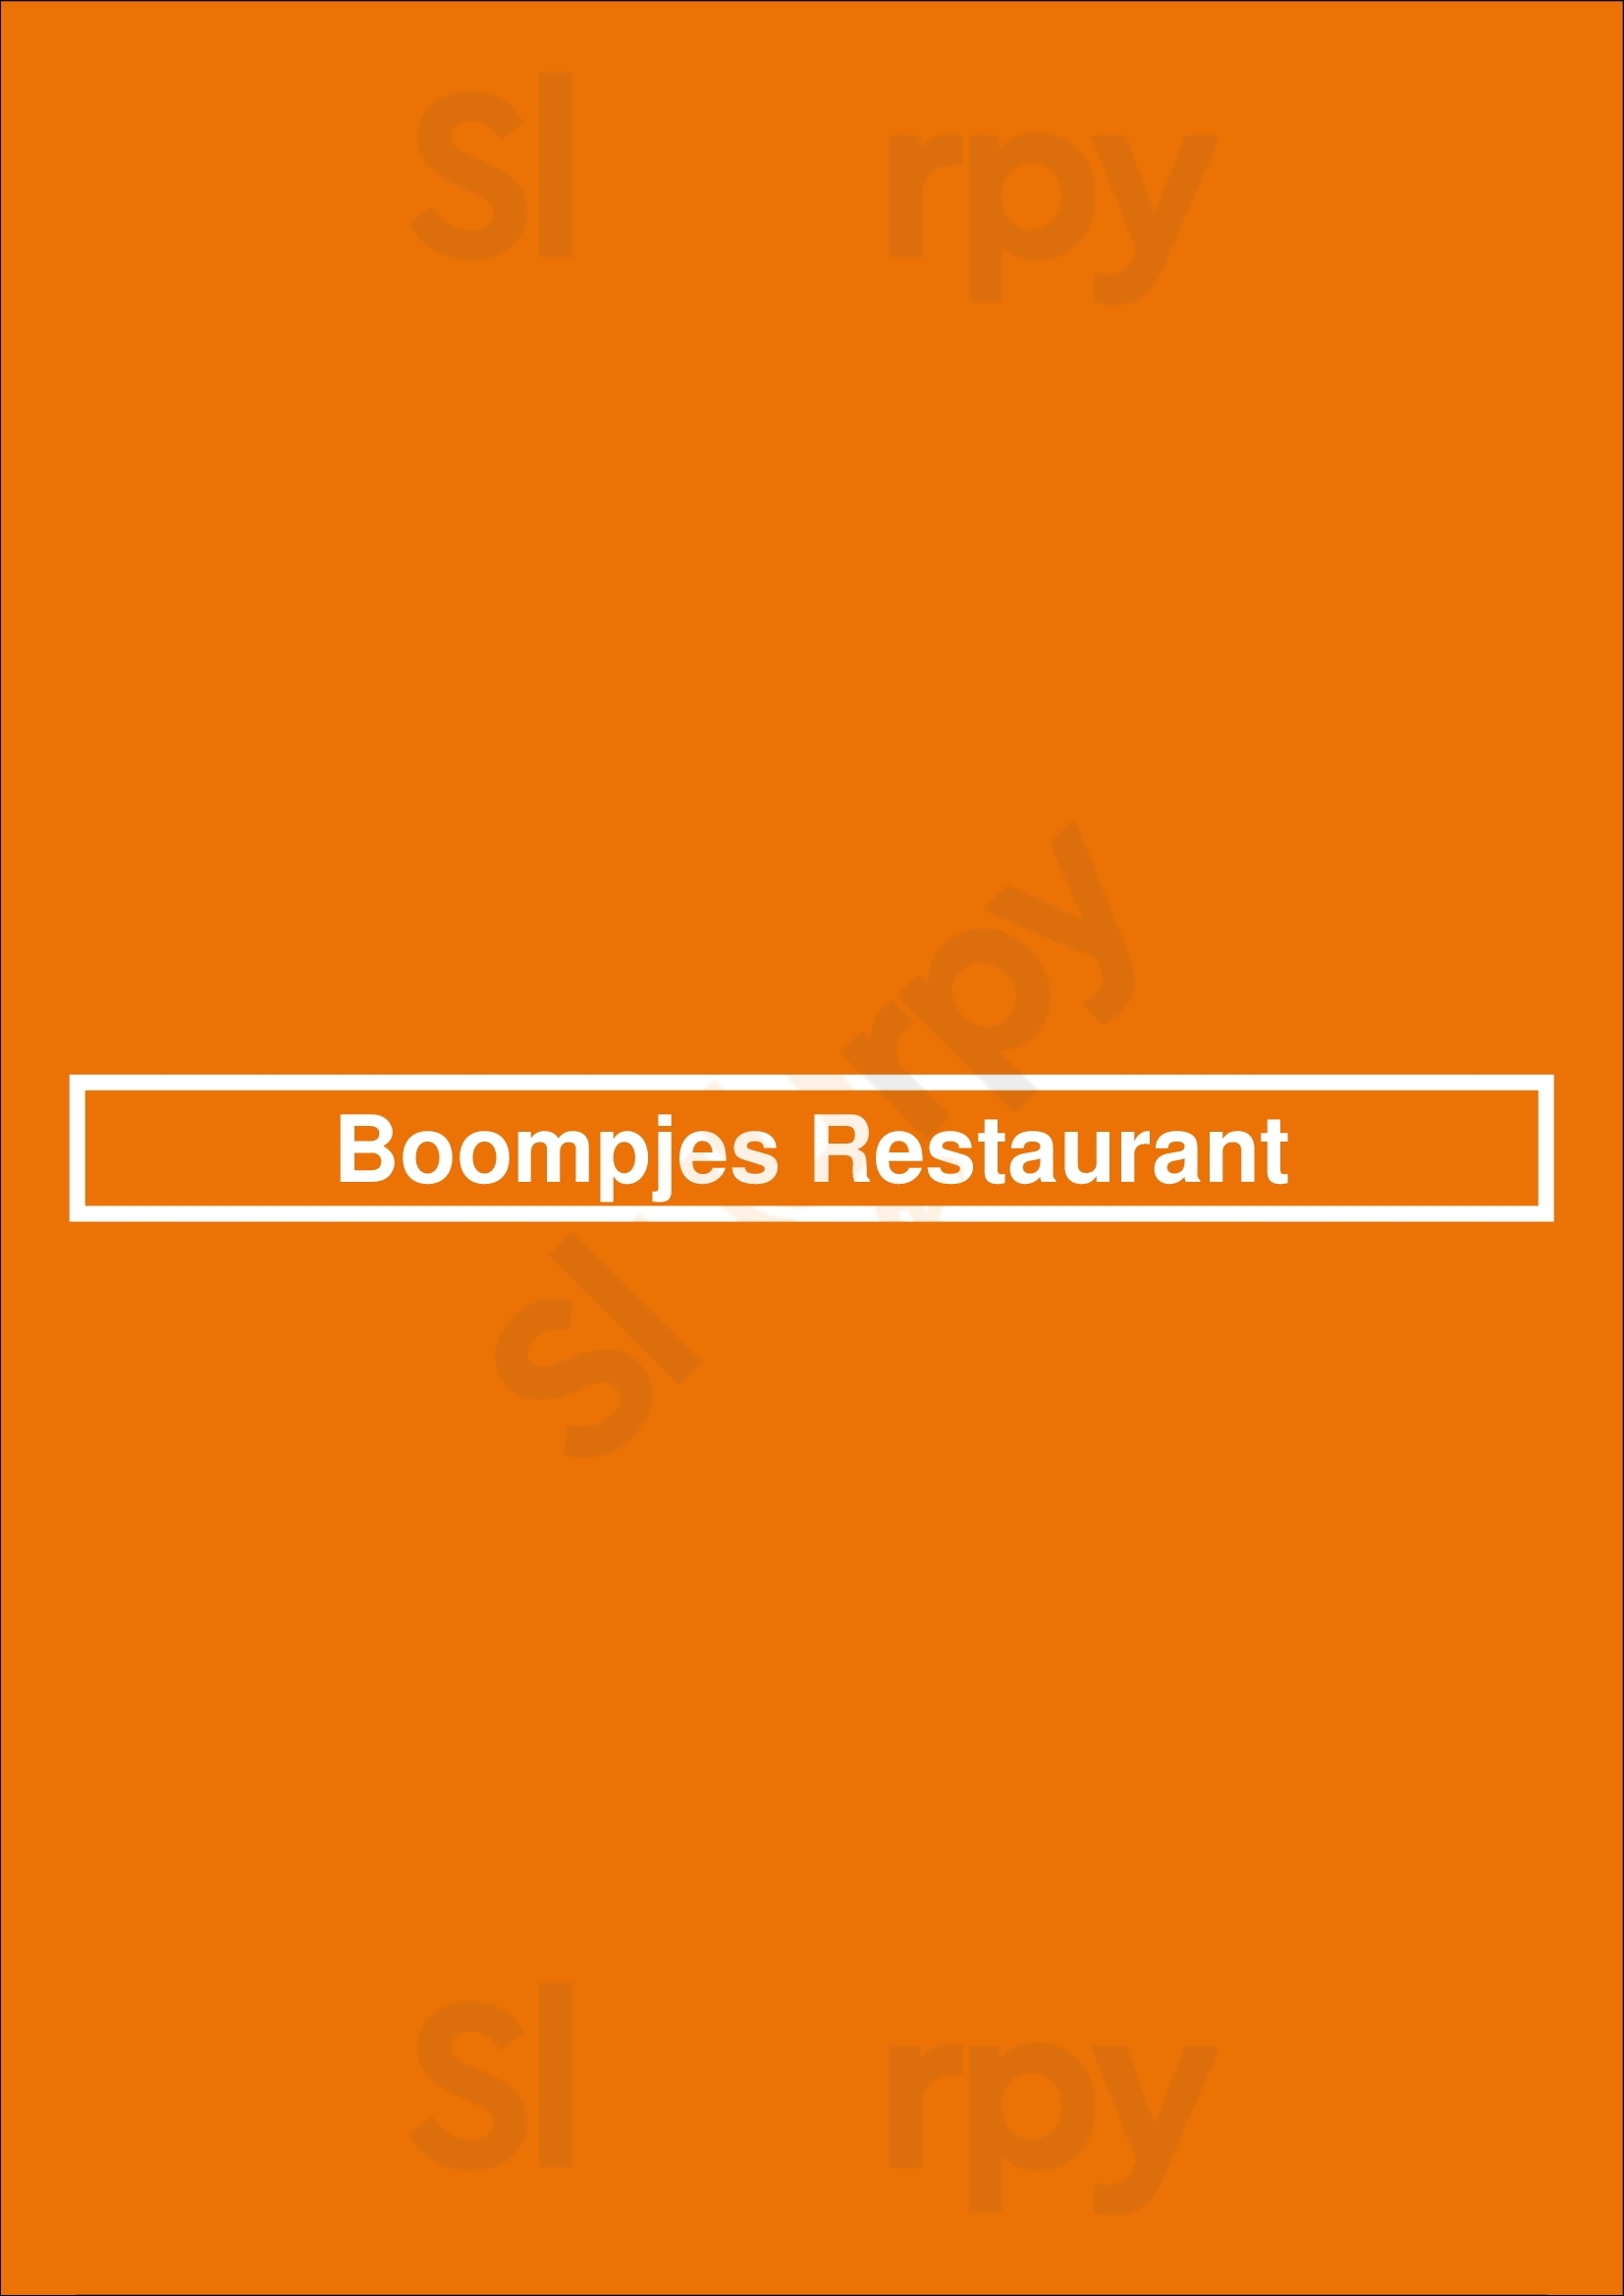 Boompjes Restaurant Overloon Menu - 1